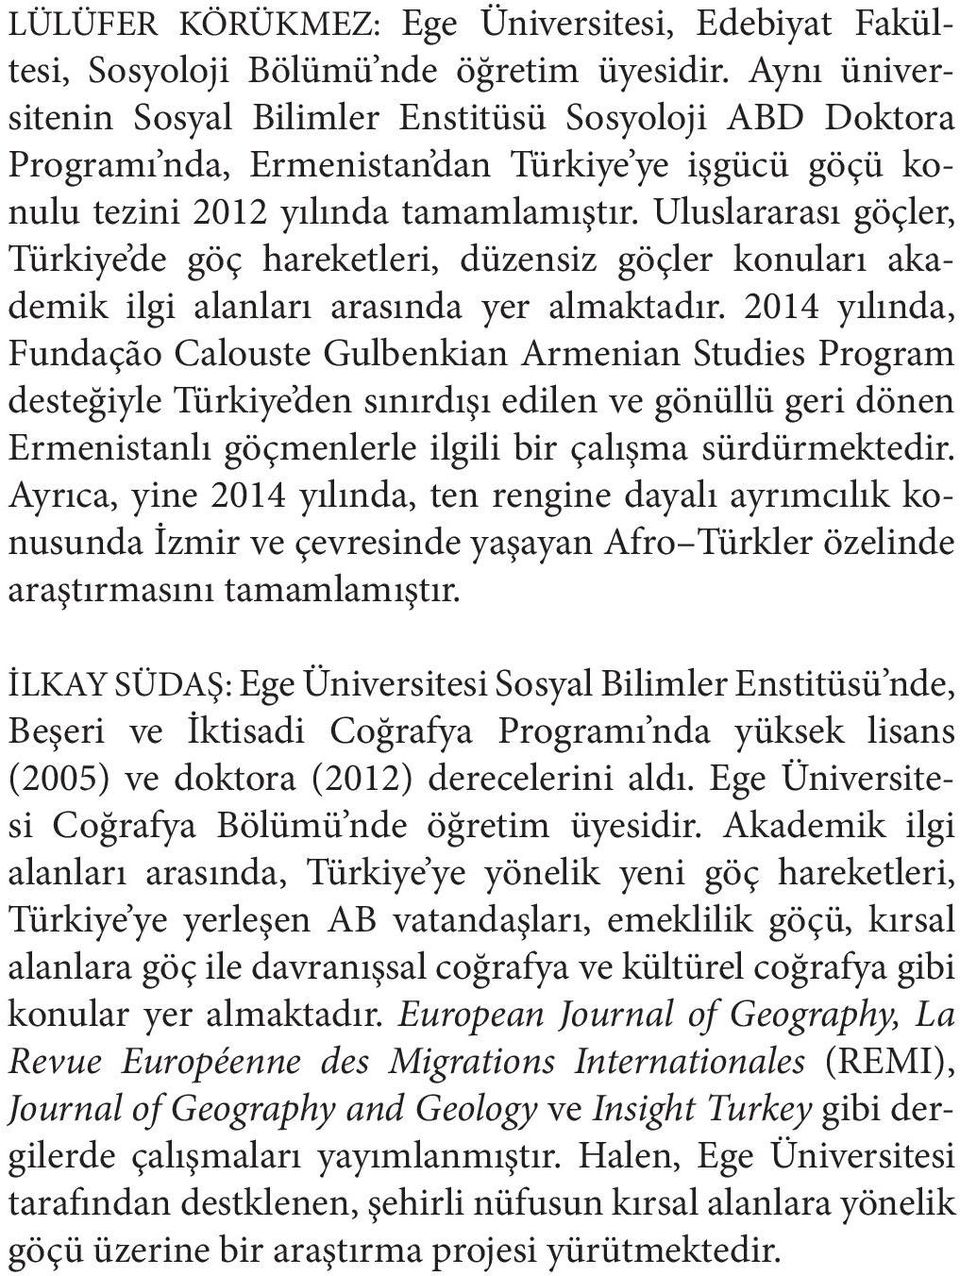 Uluslararası göçler, Türkiye de göç hareketleri, düzensiz göçler konuları akademik ilgi alanları arasında yer almaktadır.